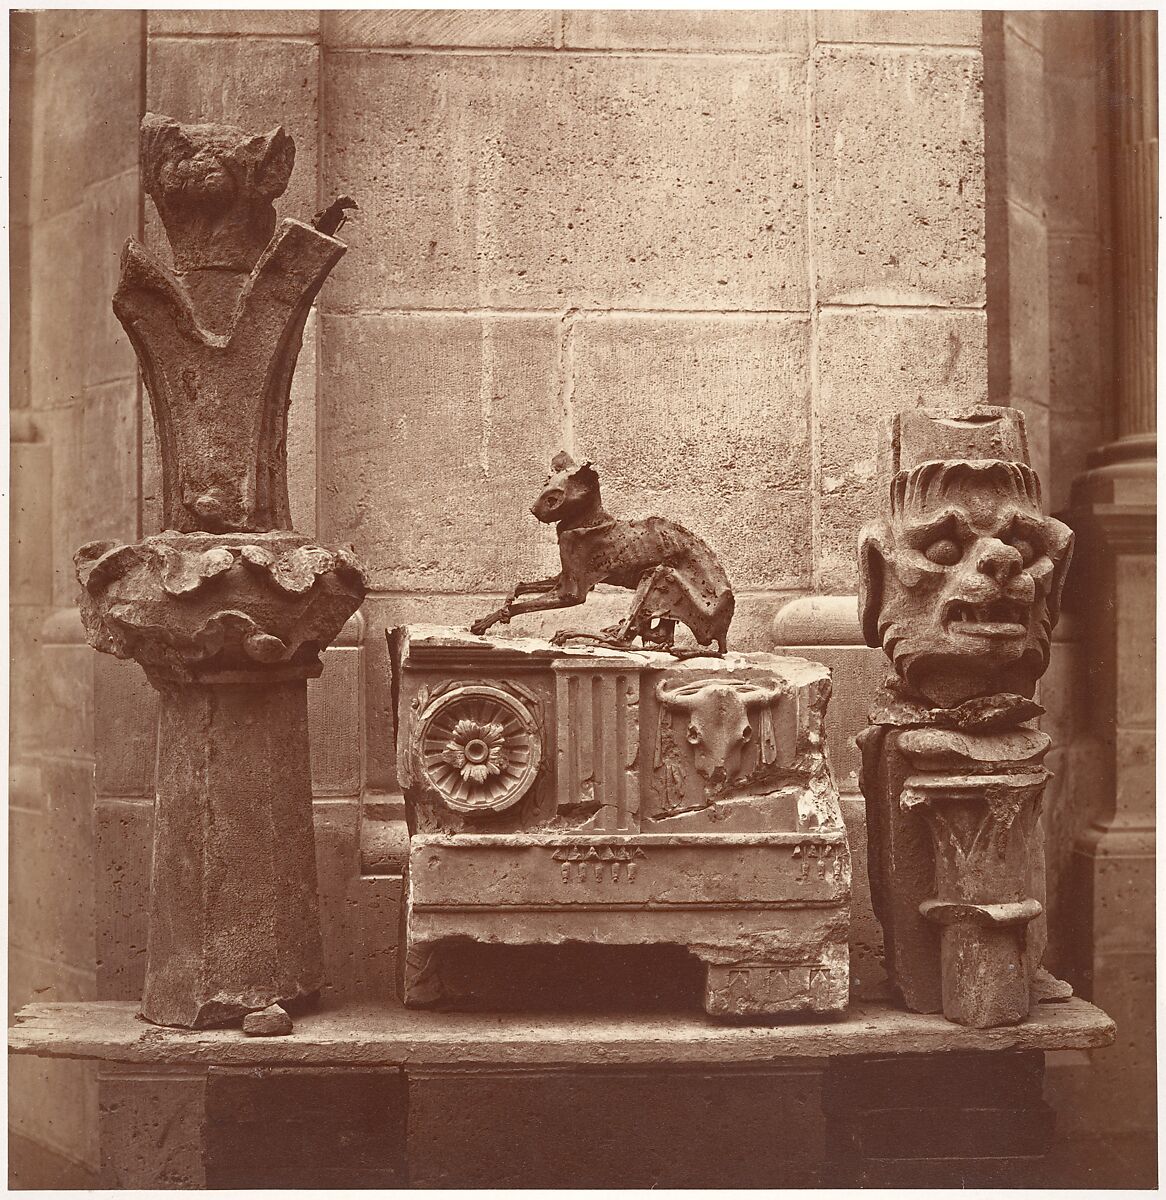 Le Chat Momifié (trouvé dans les fouilles de Saint-Germain-en-Laye), Charles Marville (French, Paris 1813–1879 Paris), Albumen silver print from glass negative 